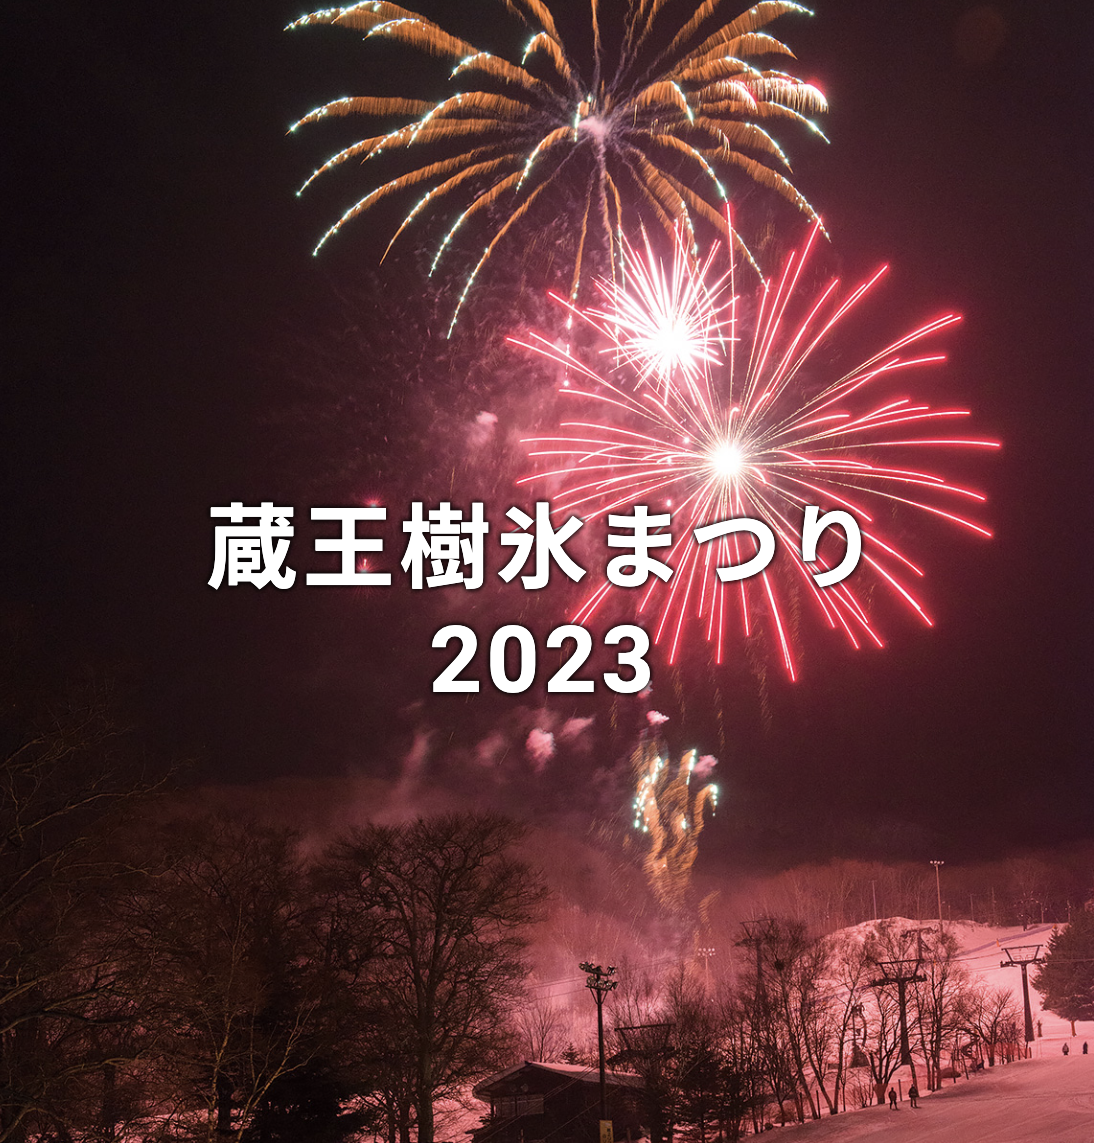 【山形イベント情報】2/4 1000人松明滑走&冬の花火が開催されます。（蔵王温泉スキー場）